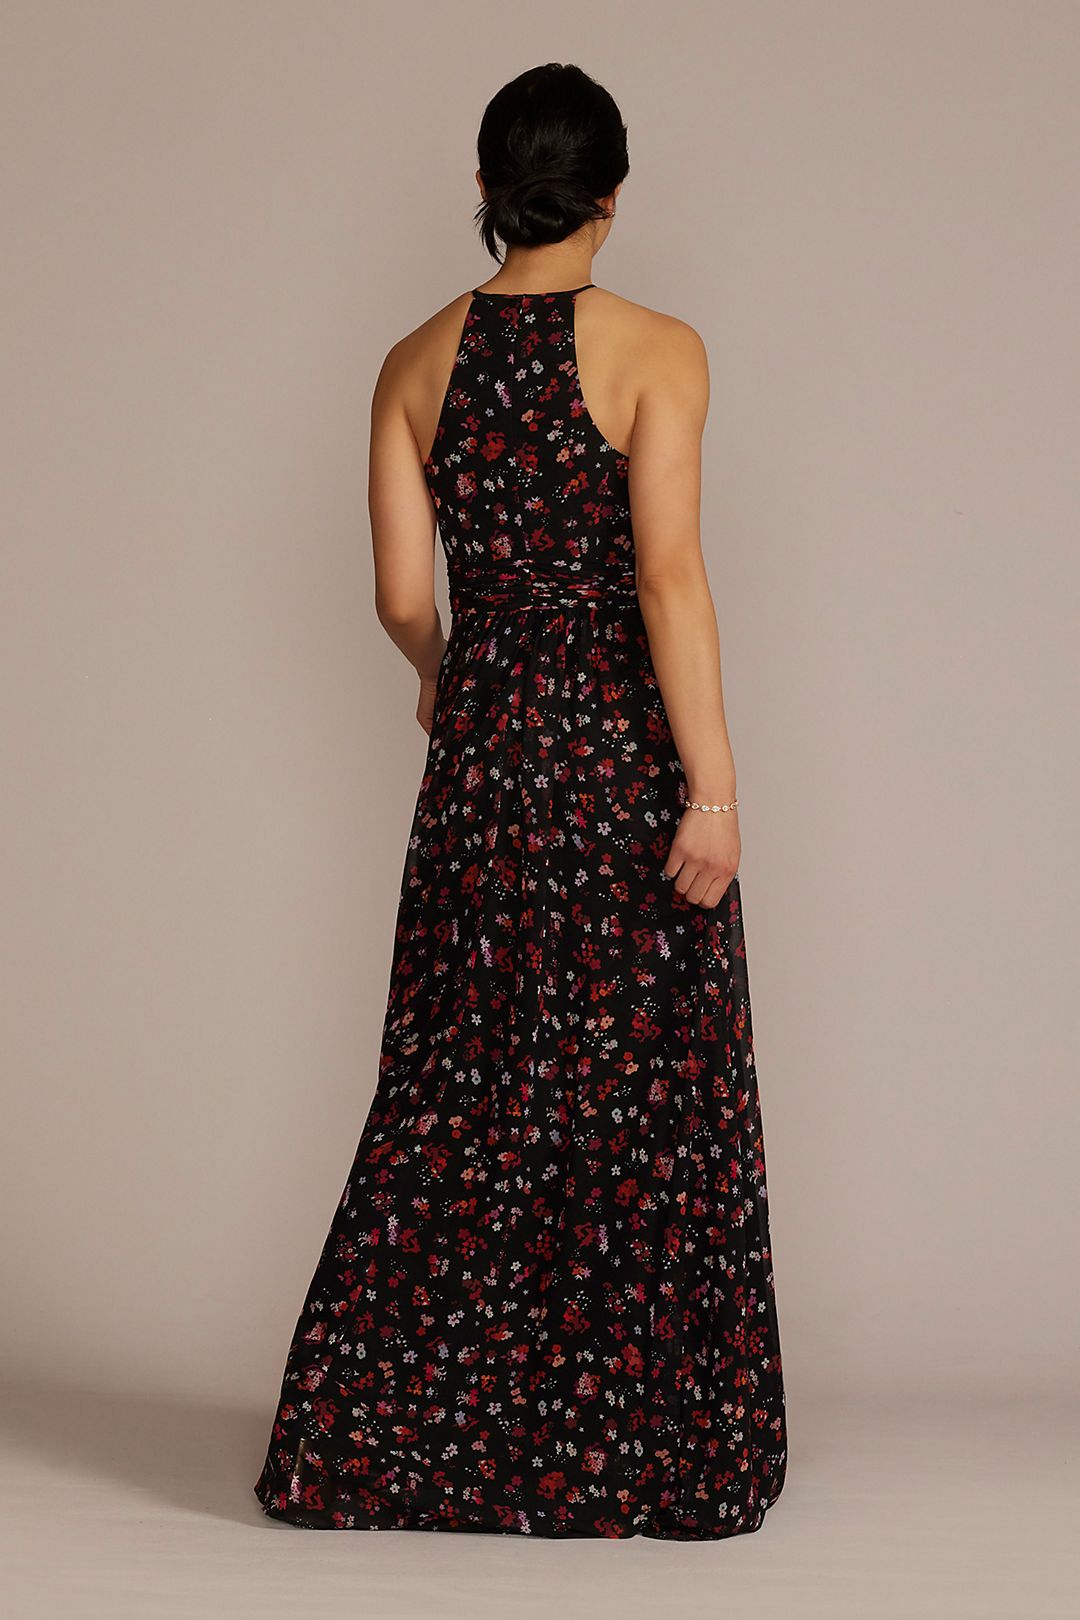 Floral Print Halter A-Line Dress with Slit Image 2